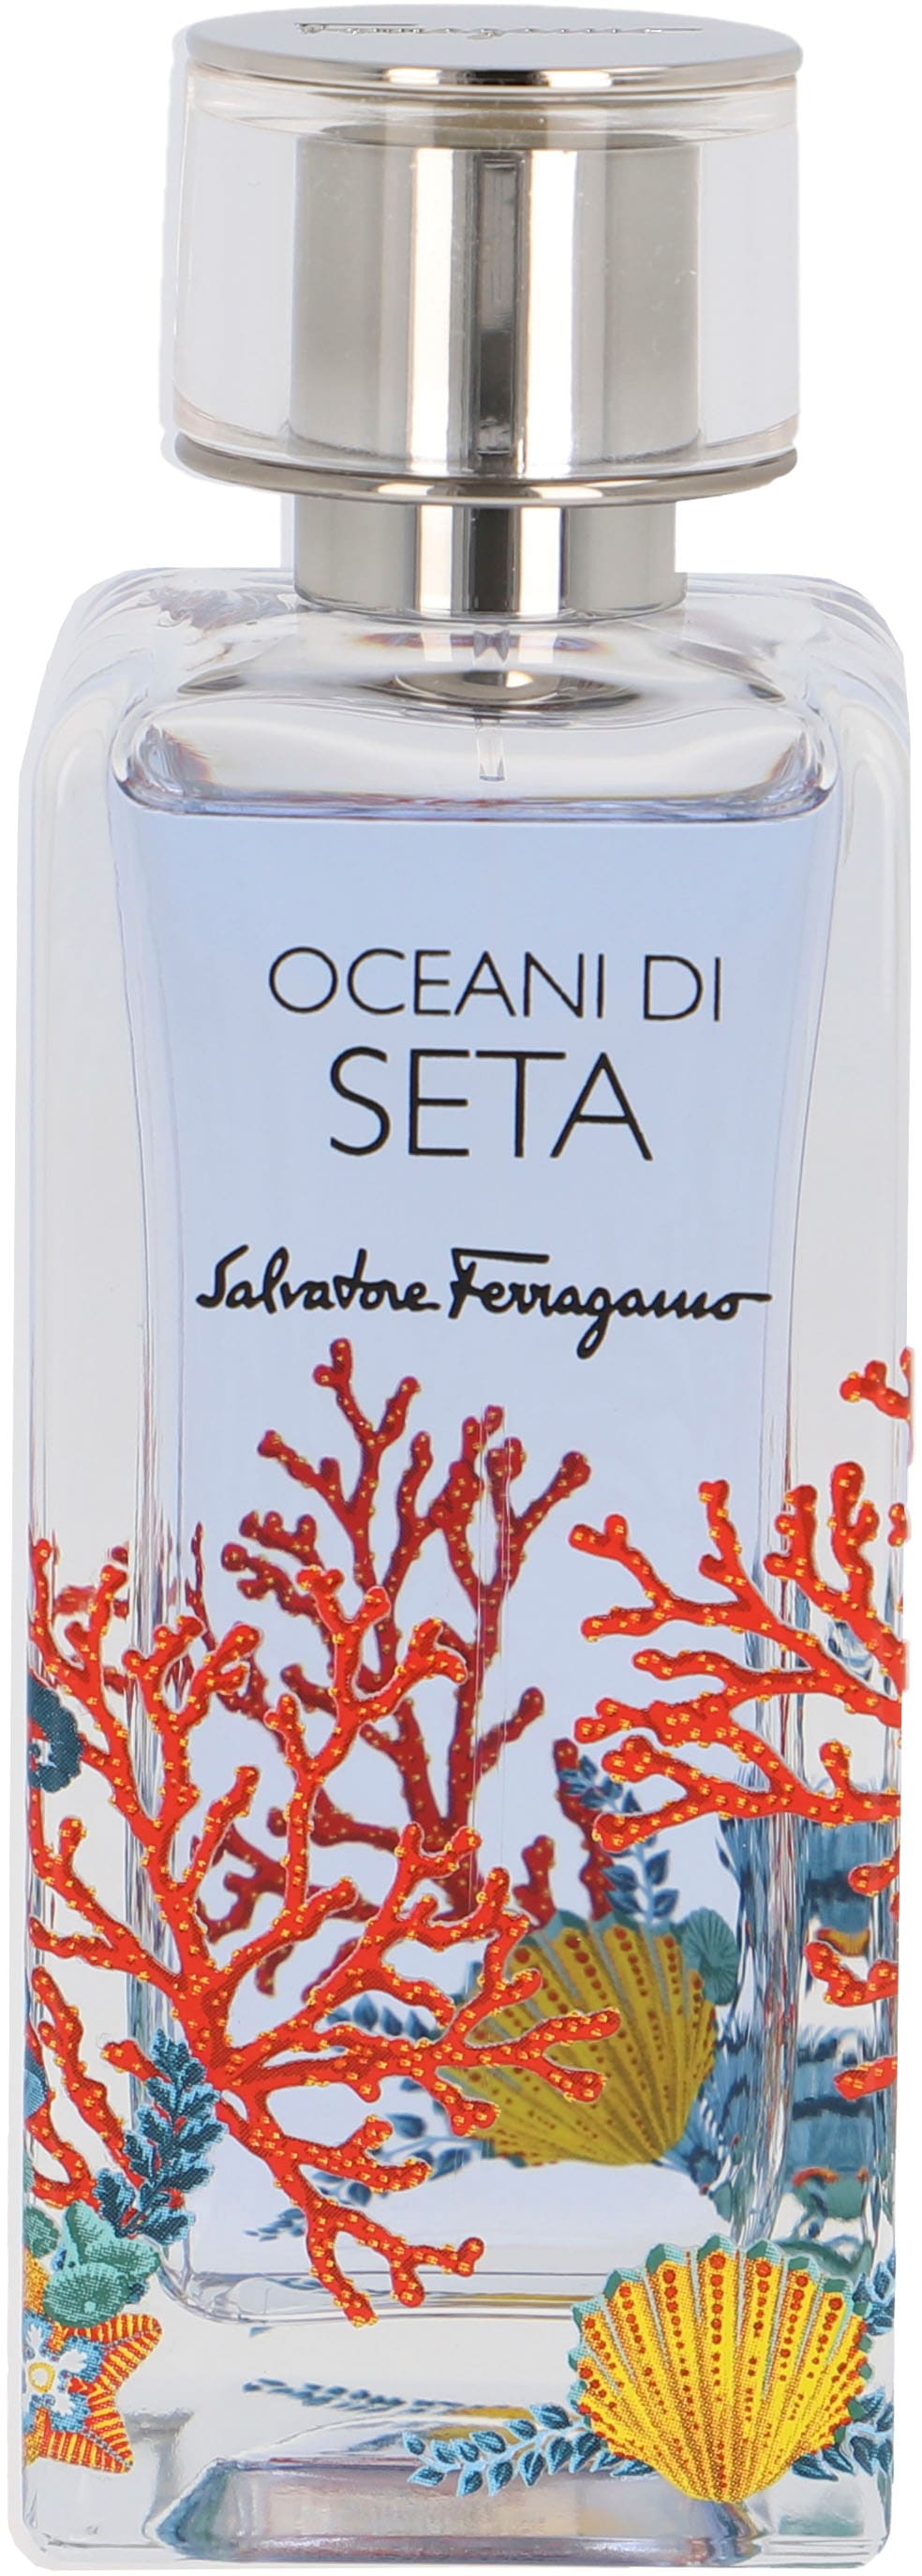 Salvatore Ferragamo Eau de Parfum »Oceani di Seta«